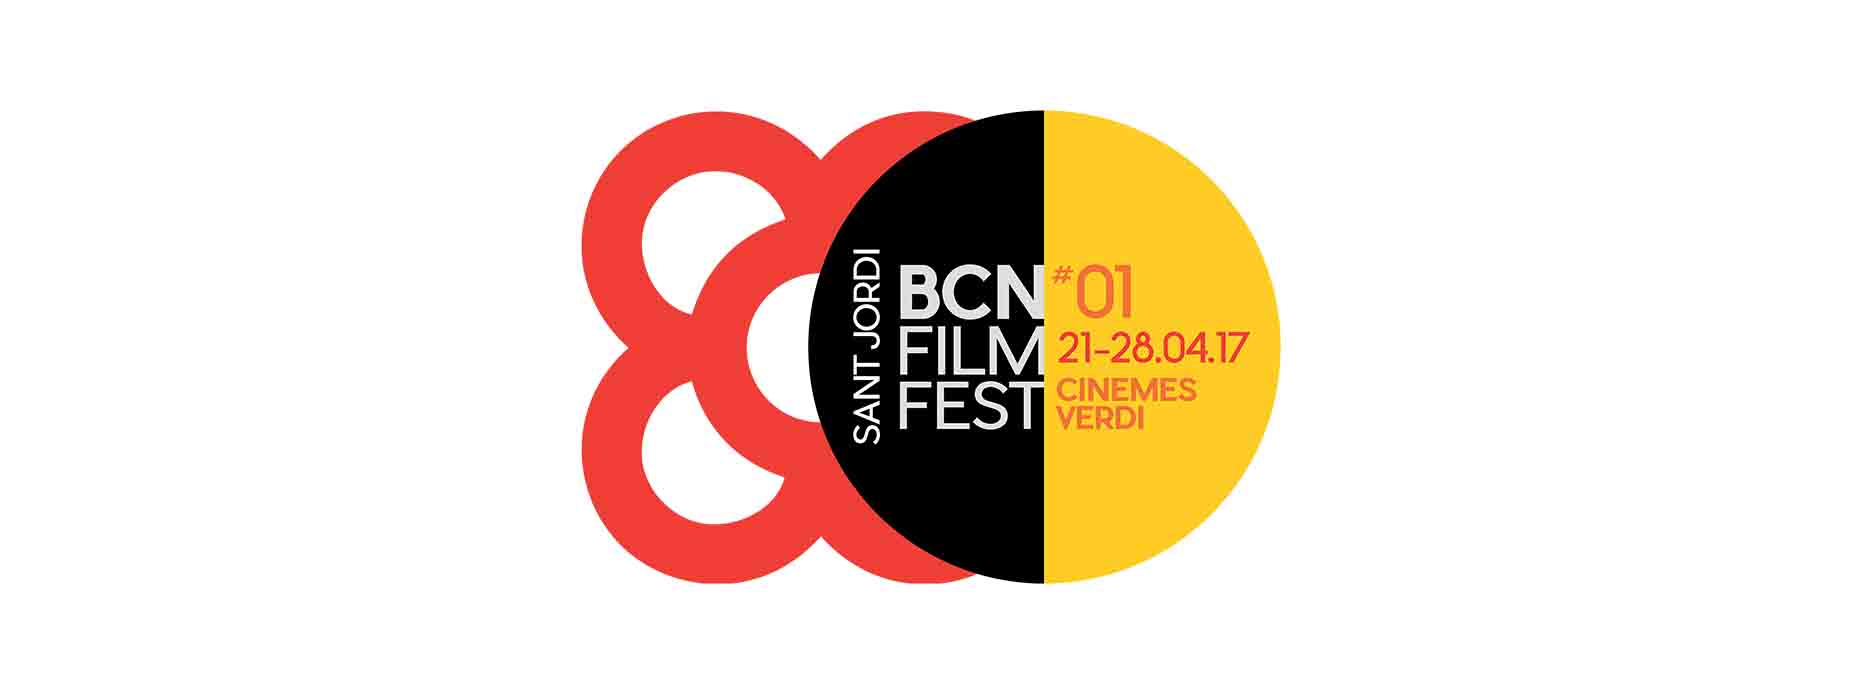 Palmarés del BCN Film Fest